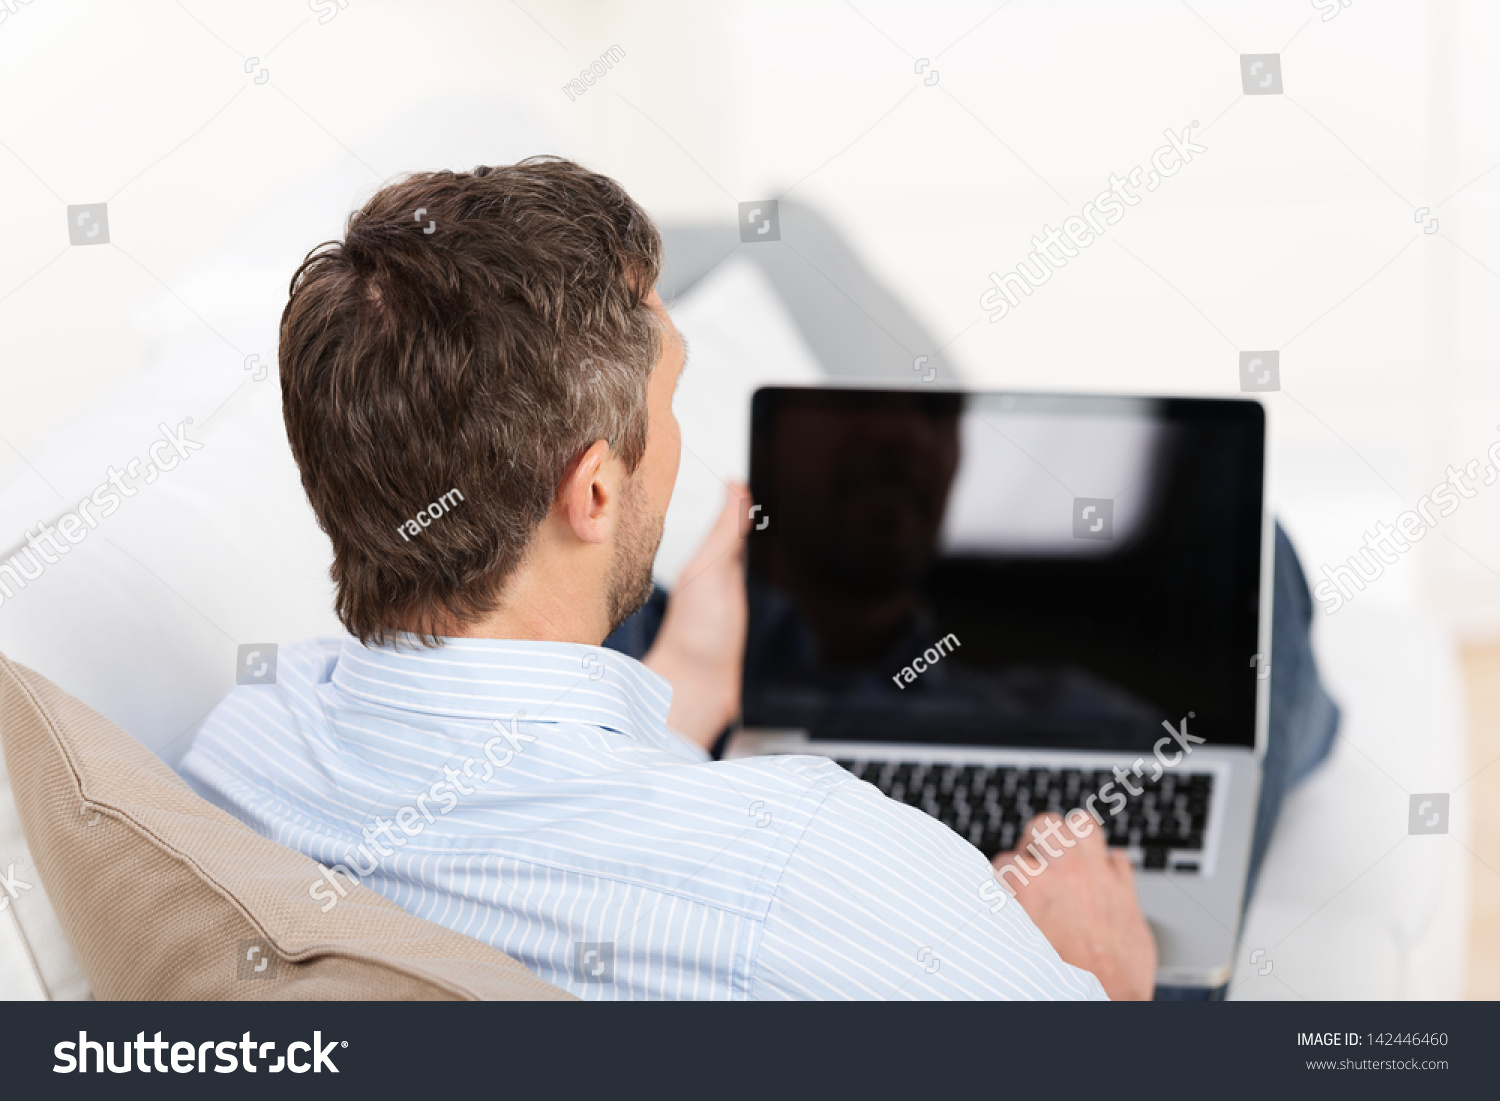 Парень дрочит хер сидя за компьютером фото